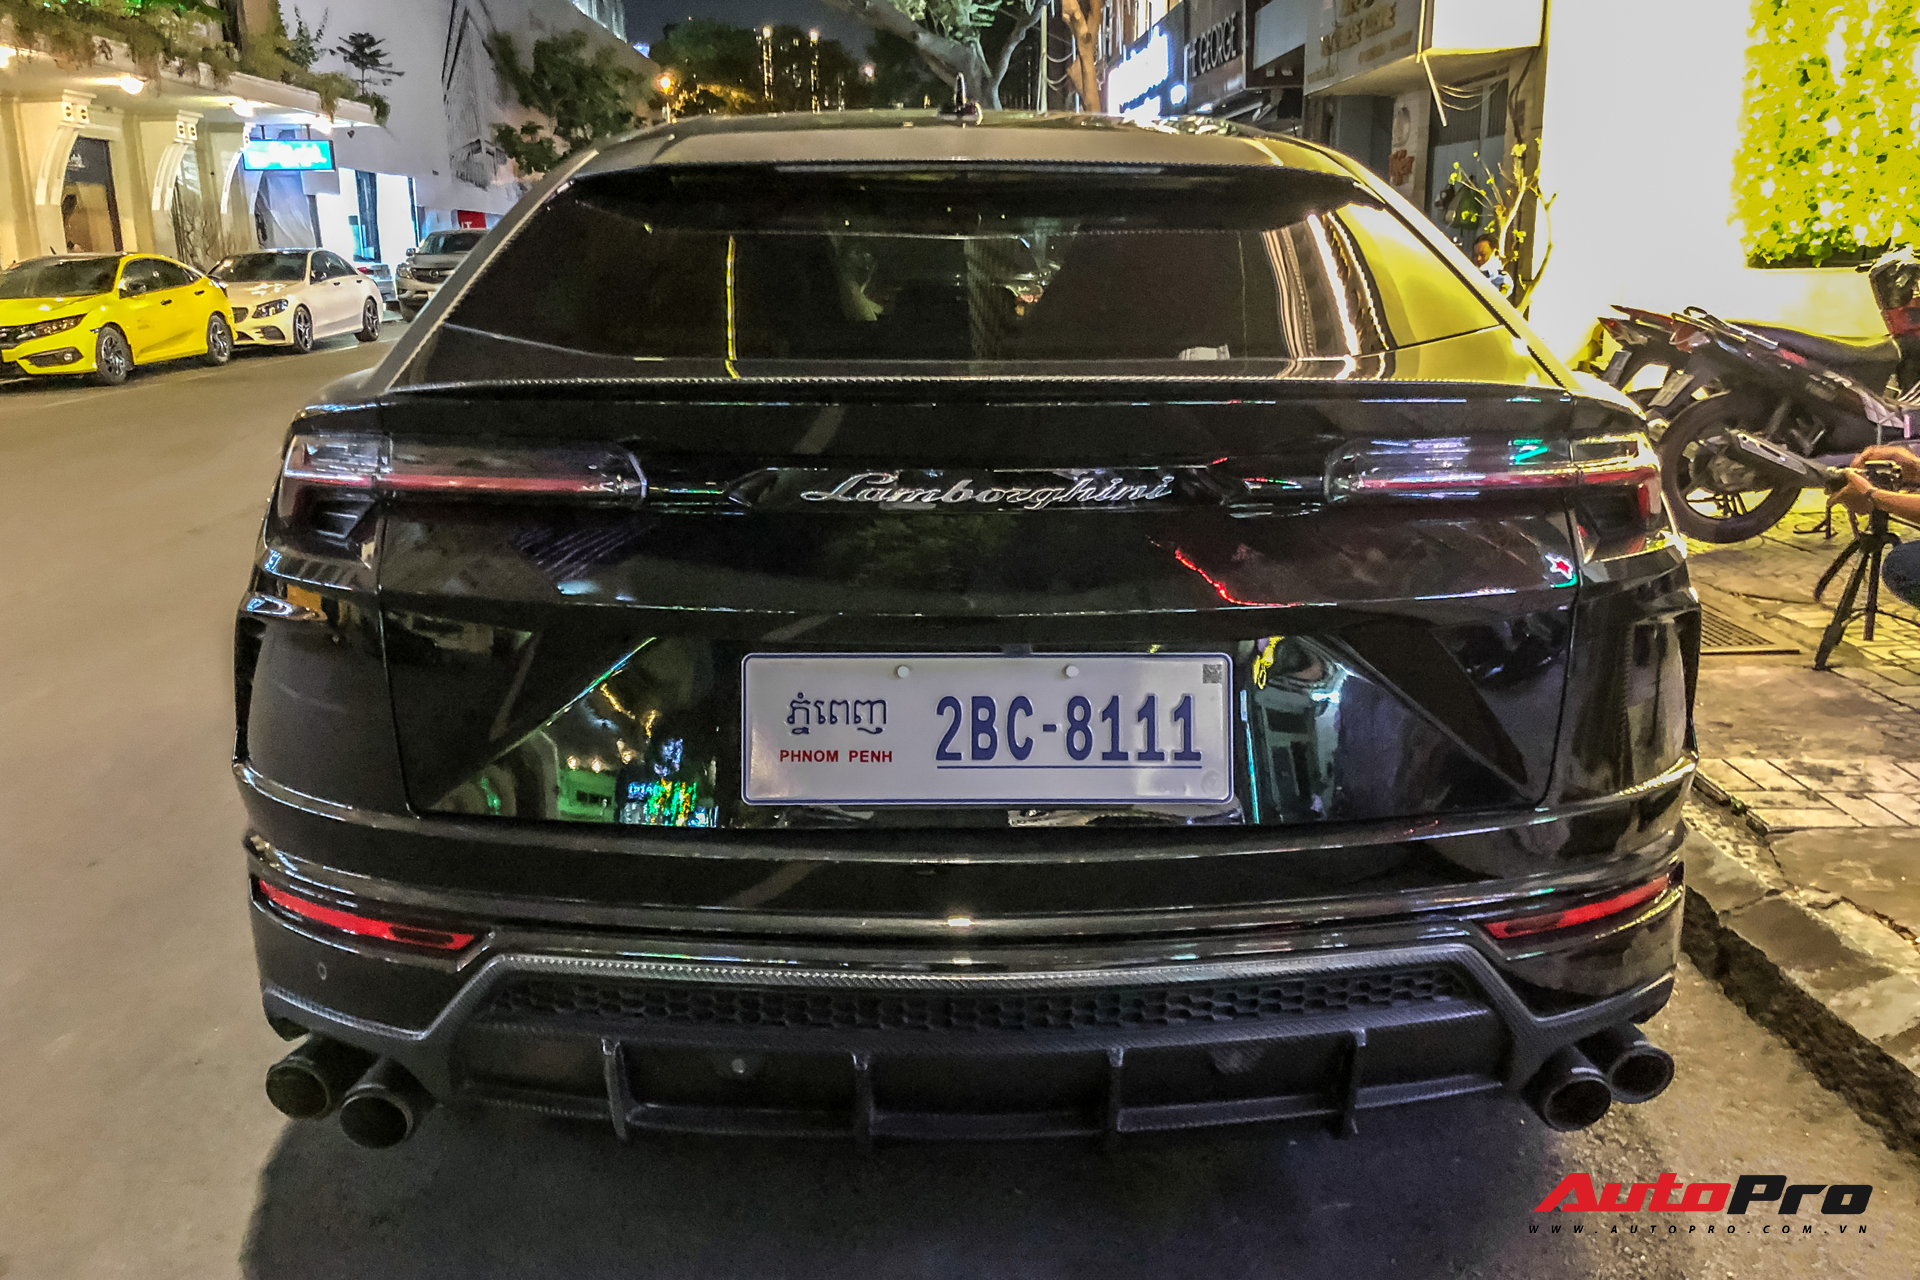 Lamborghini Urus biển số lạ xuất hiện tại Sài Gòn với một chi tiết khác biệt với những chiếc còn lại tại Việt Nam - Ảnh 2.